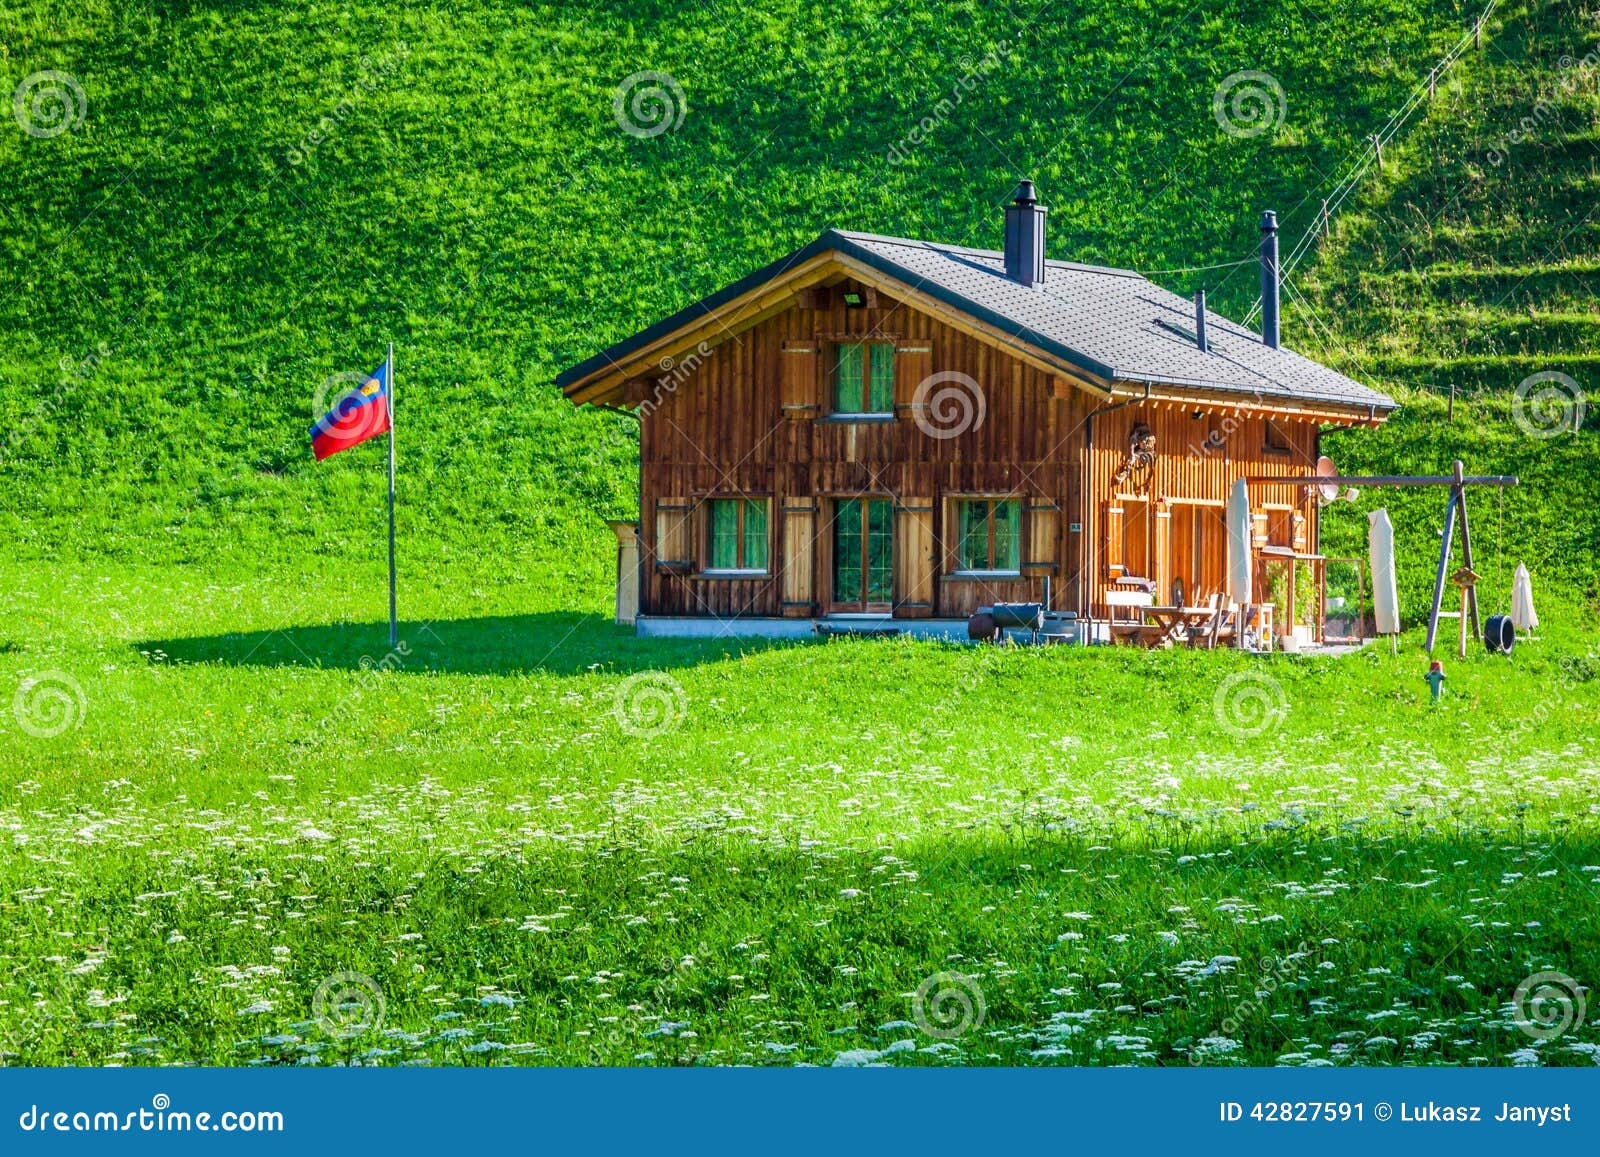 wooden houses in steg, malbun, in lichtenstein, europe